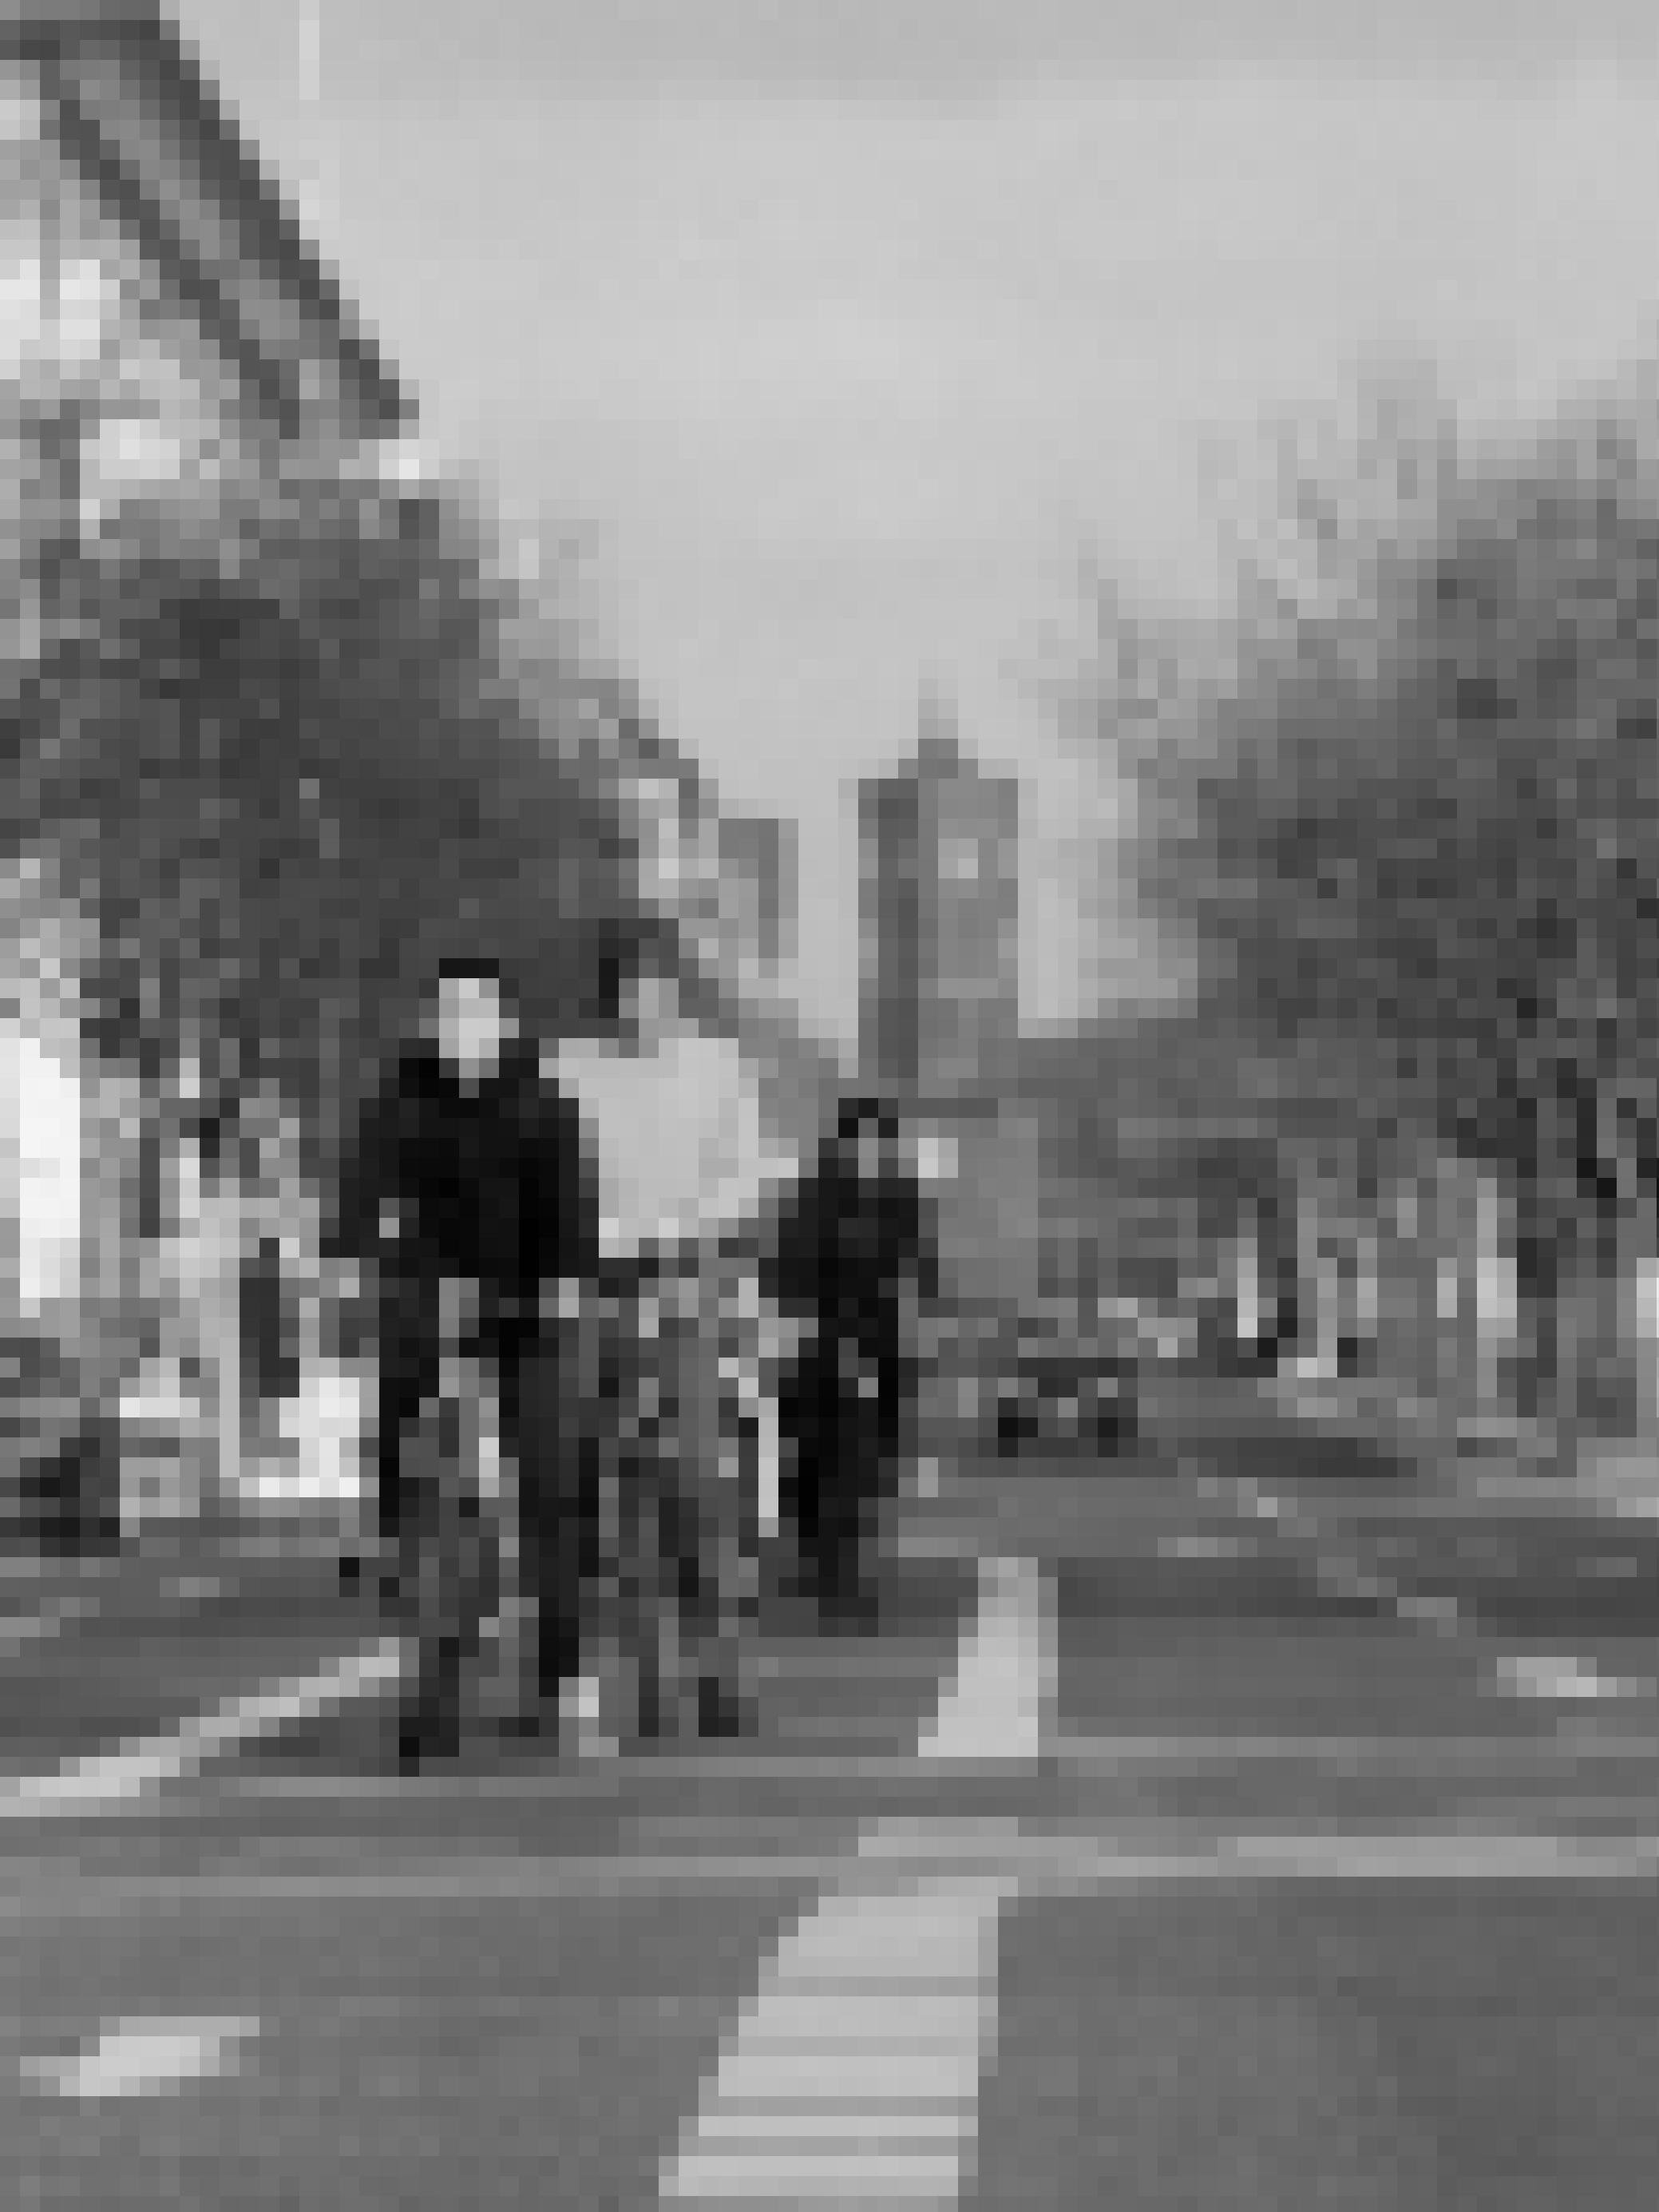 Drei Radfahrer warten an einer Ampel, dahinter ist bis zum Stadtschloss nur ein einziger Pkw zu erkennen.